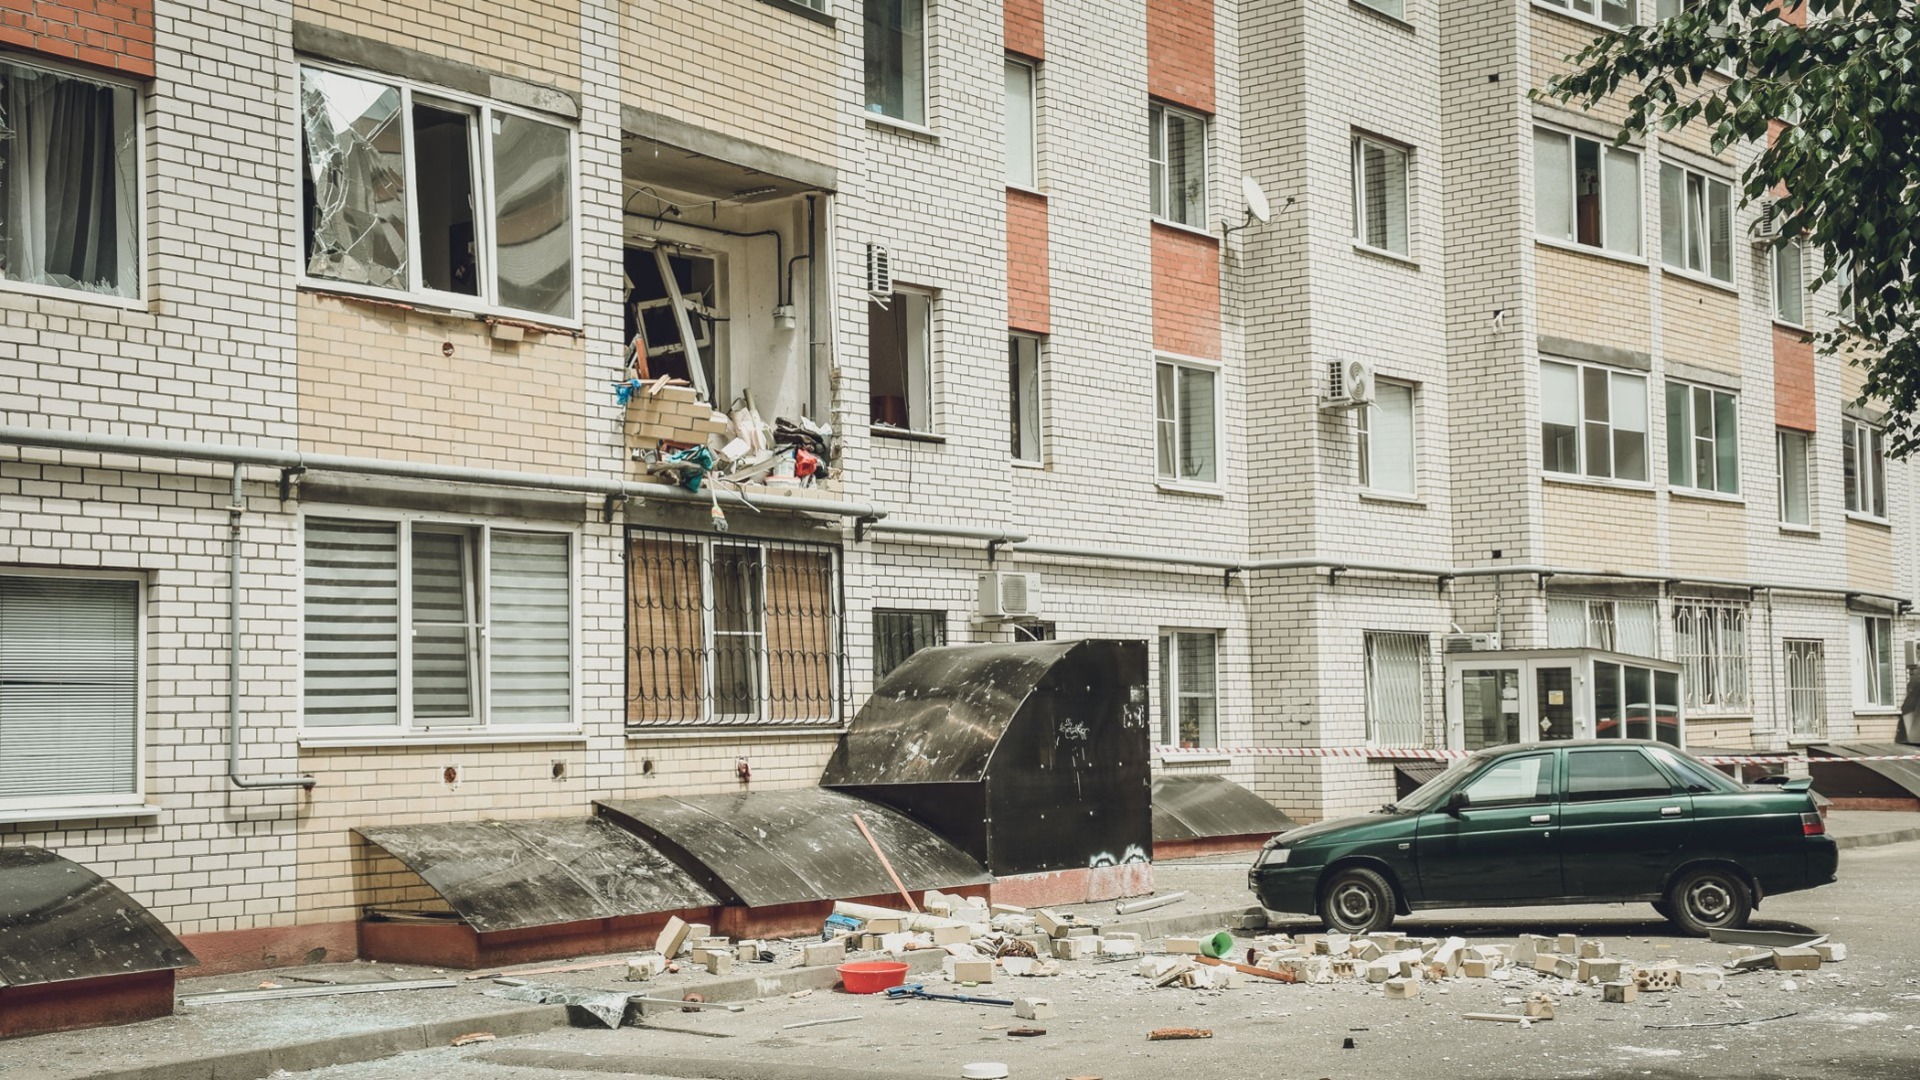 Появились первые кадры после взрыва в девятиэтажном доме в Ростове-на-Дону 2 июня